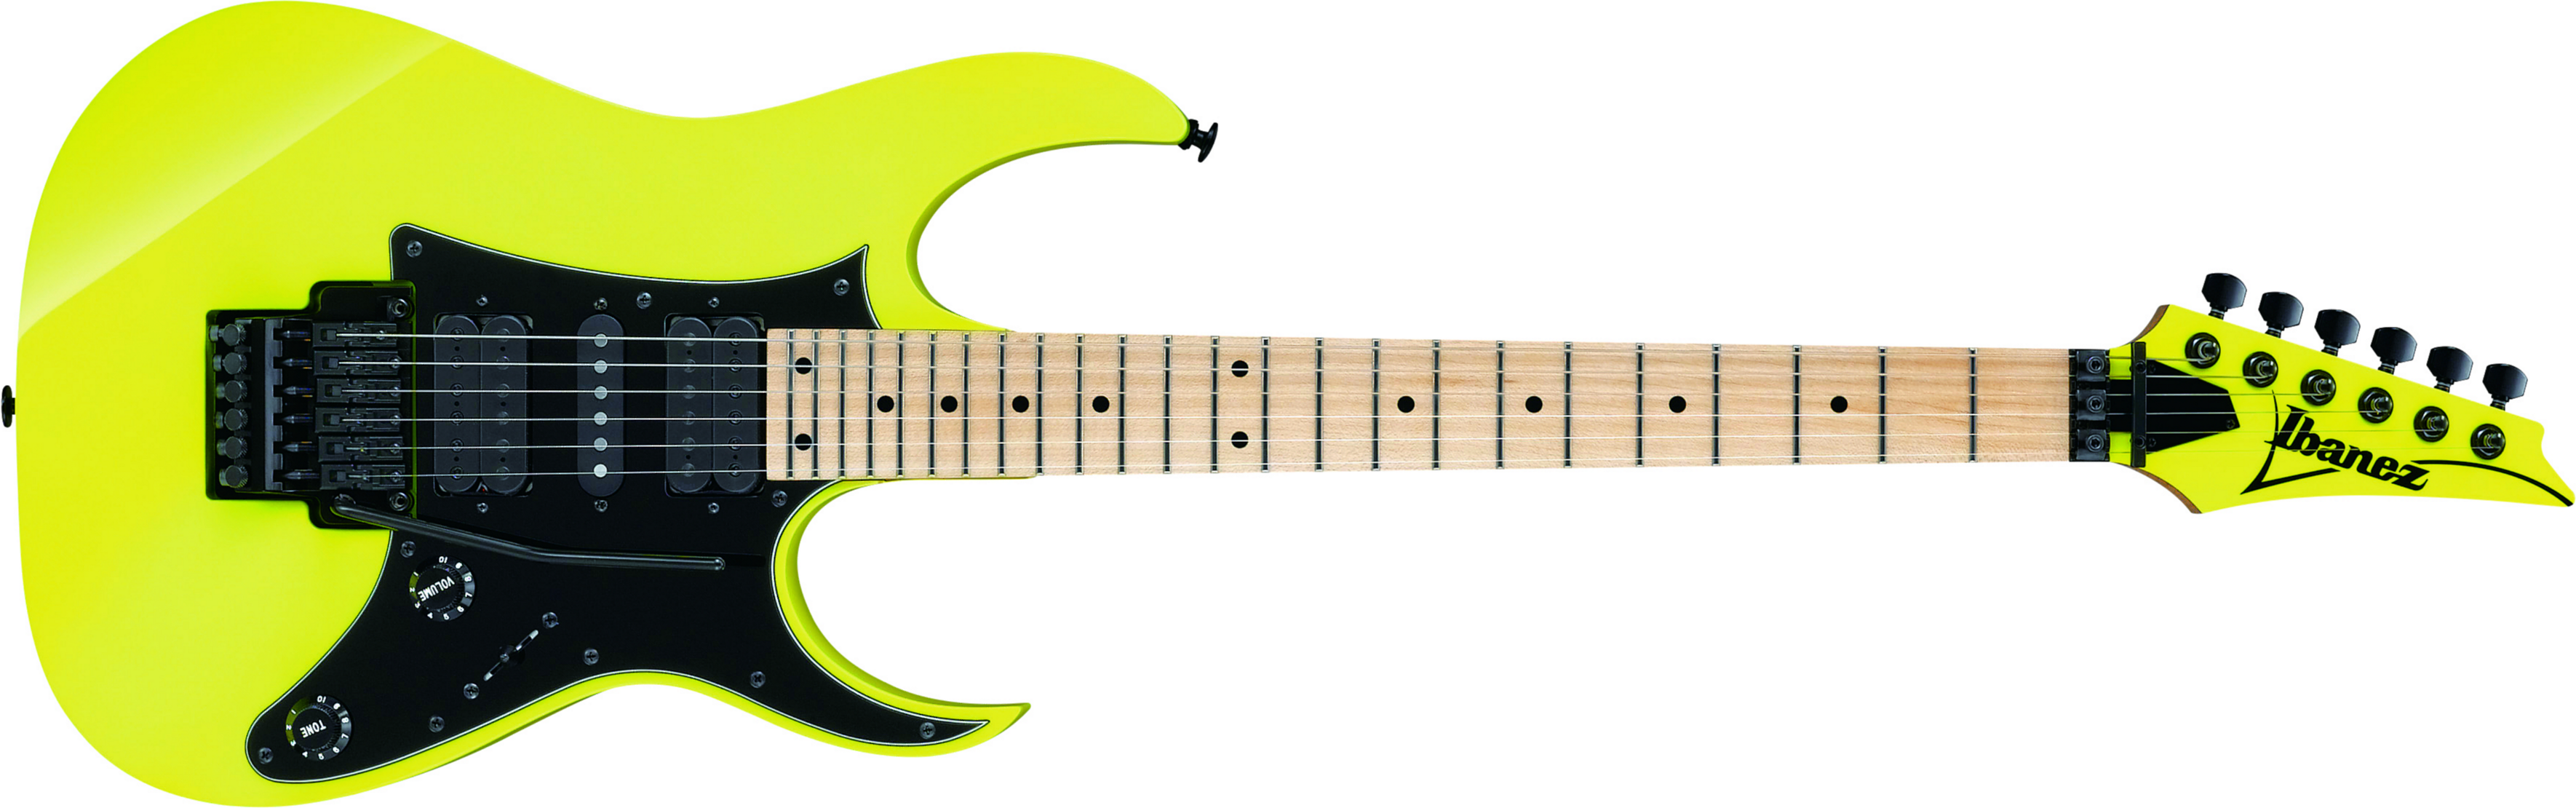 Ibanez Rg550 Dy Genesis Japon Hsh Fr Mn - Desert Sun Yellow - Guitarra eléctrica con forma de str. - Main picture